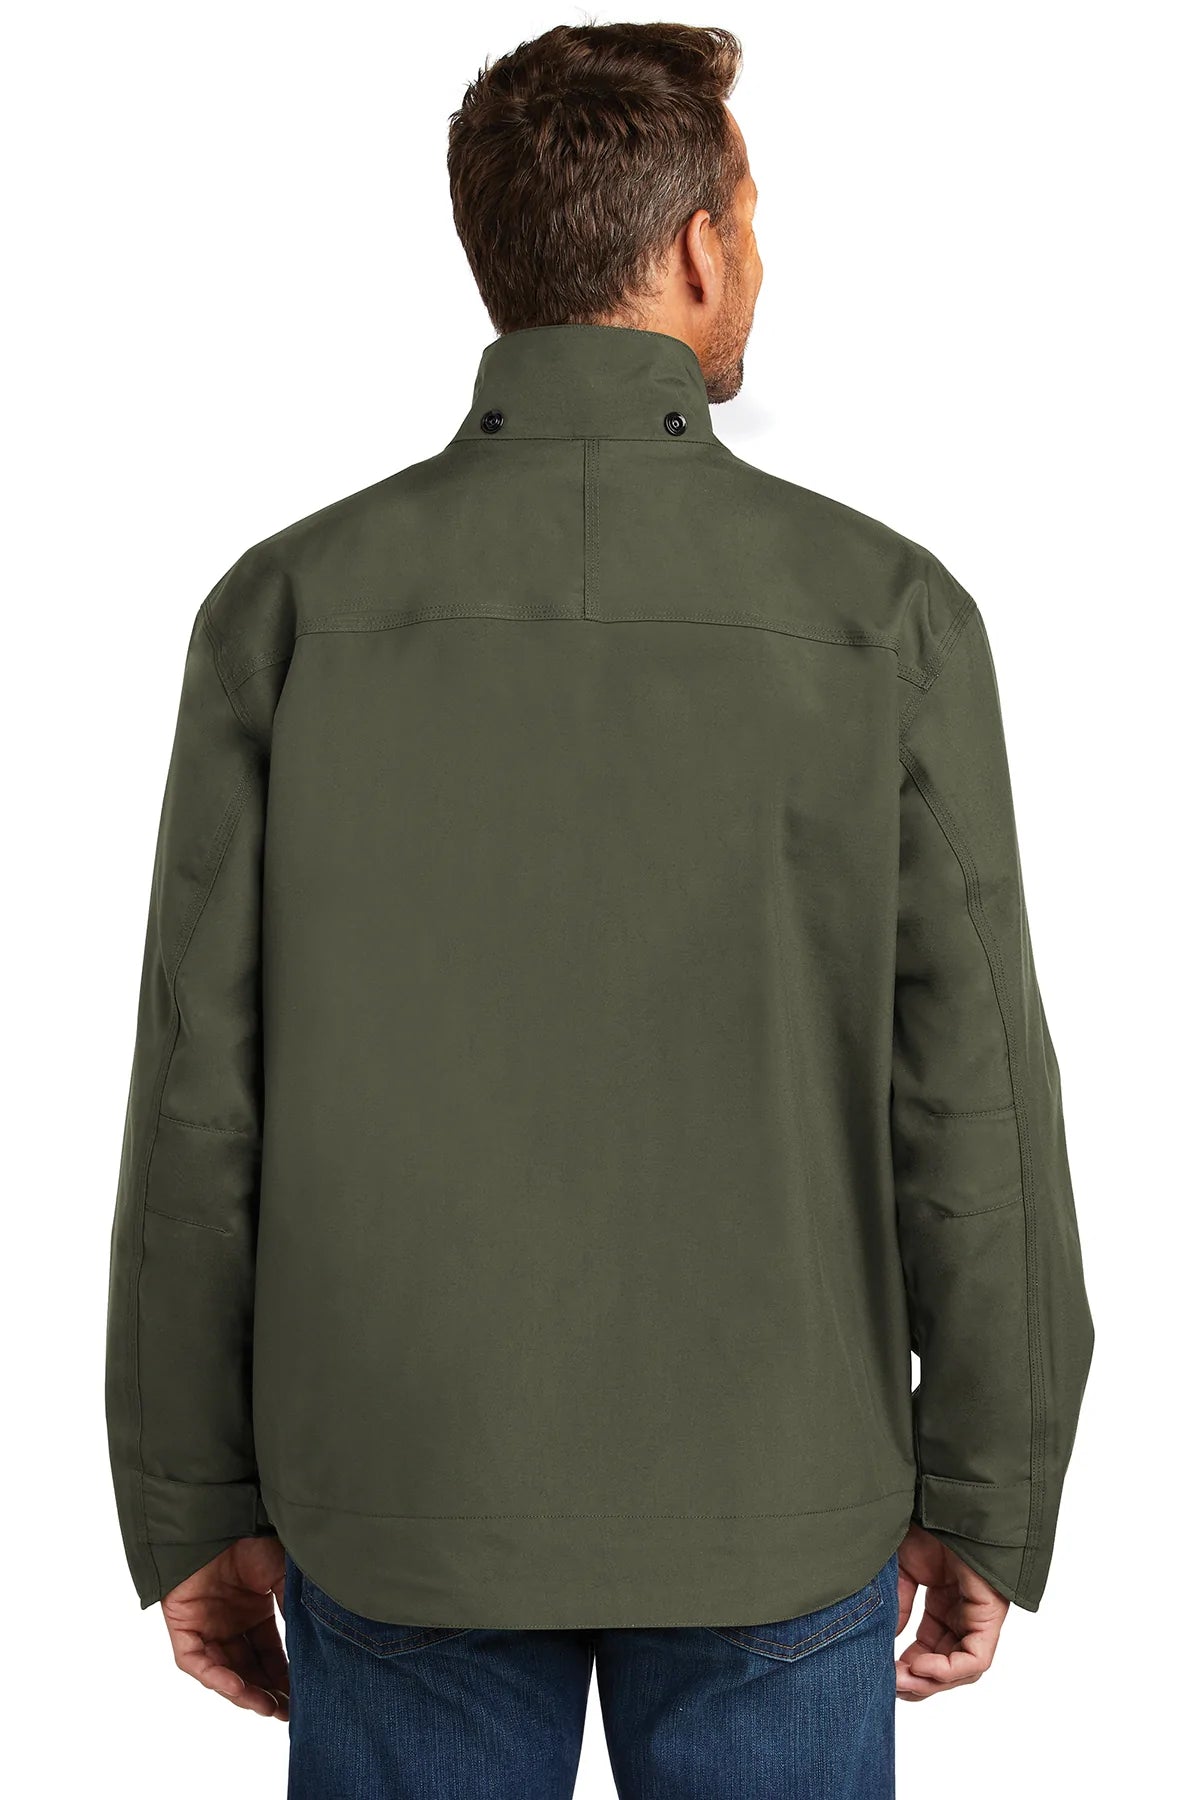 carhartt_ctj162 _olive_company_logo_jackets